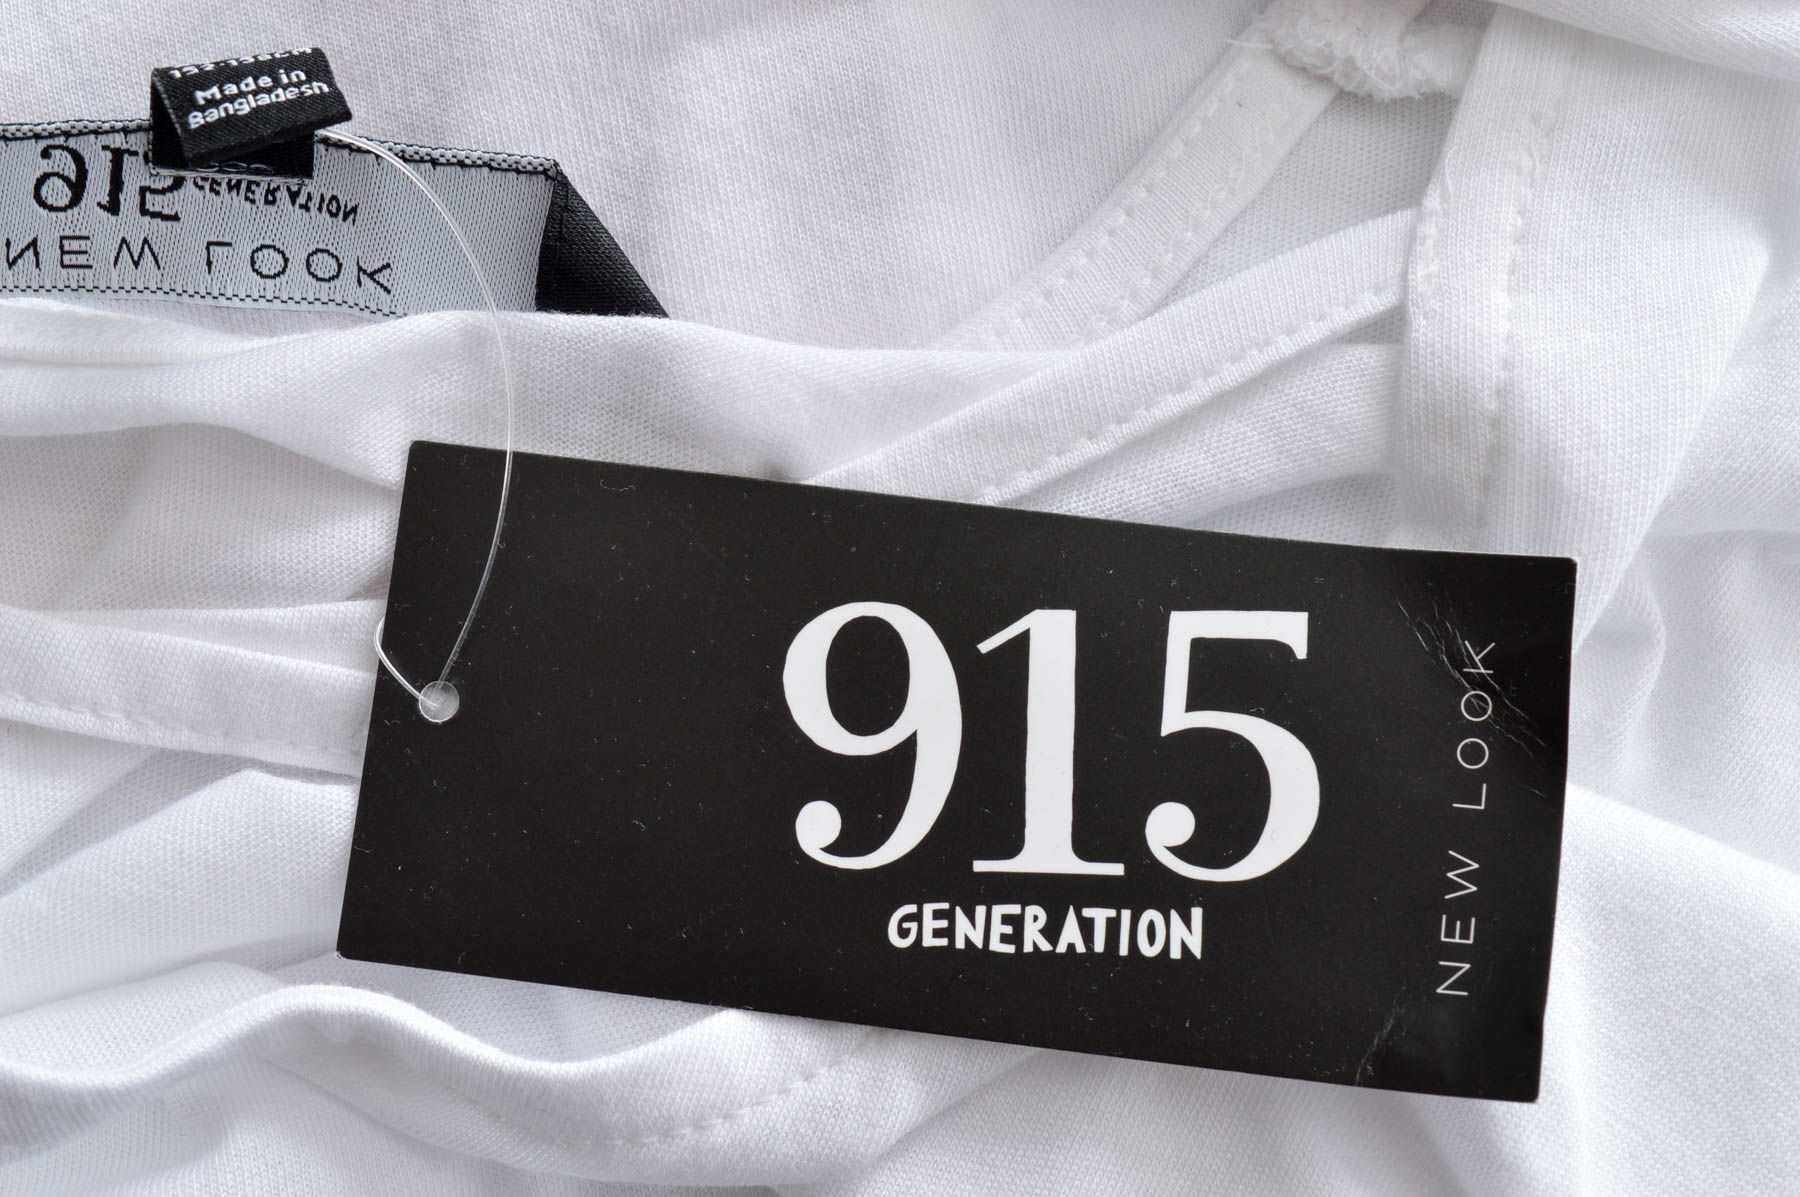 Koszulka dla dziewczynki - New Look 915 Generation - 2